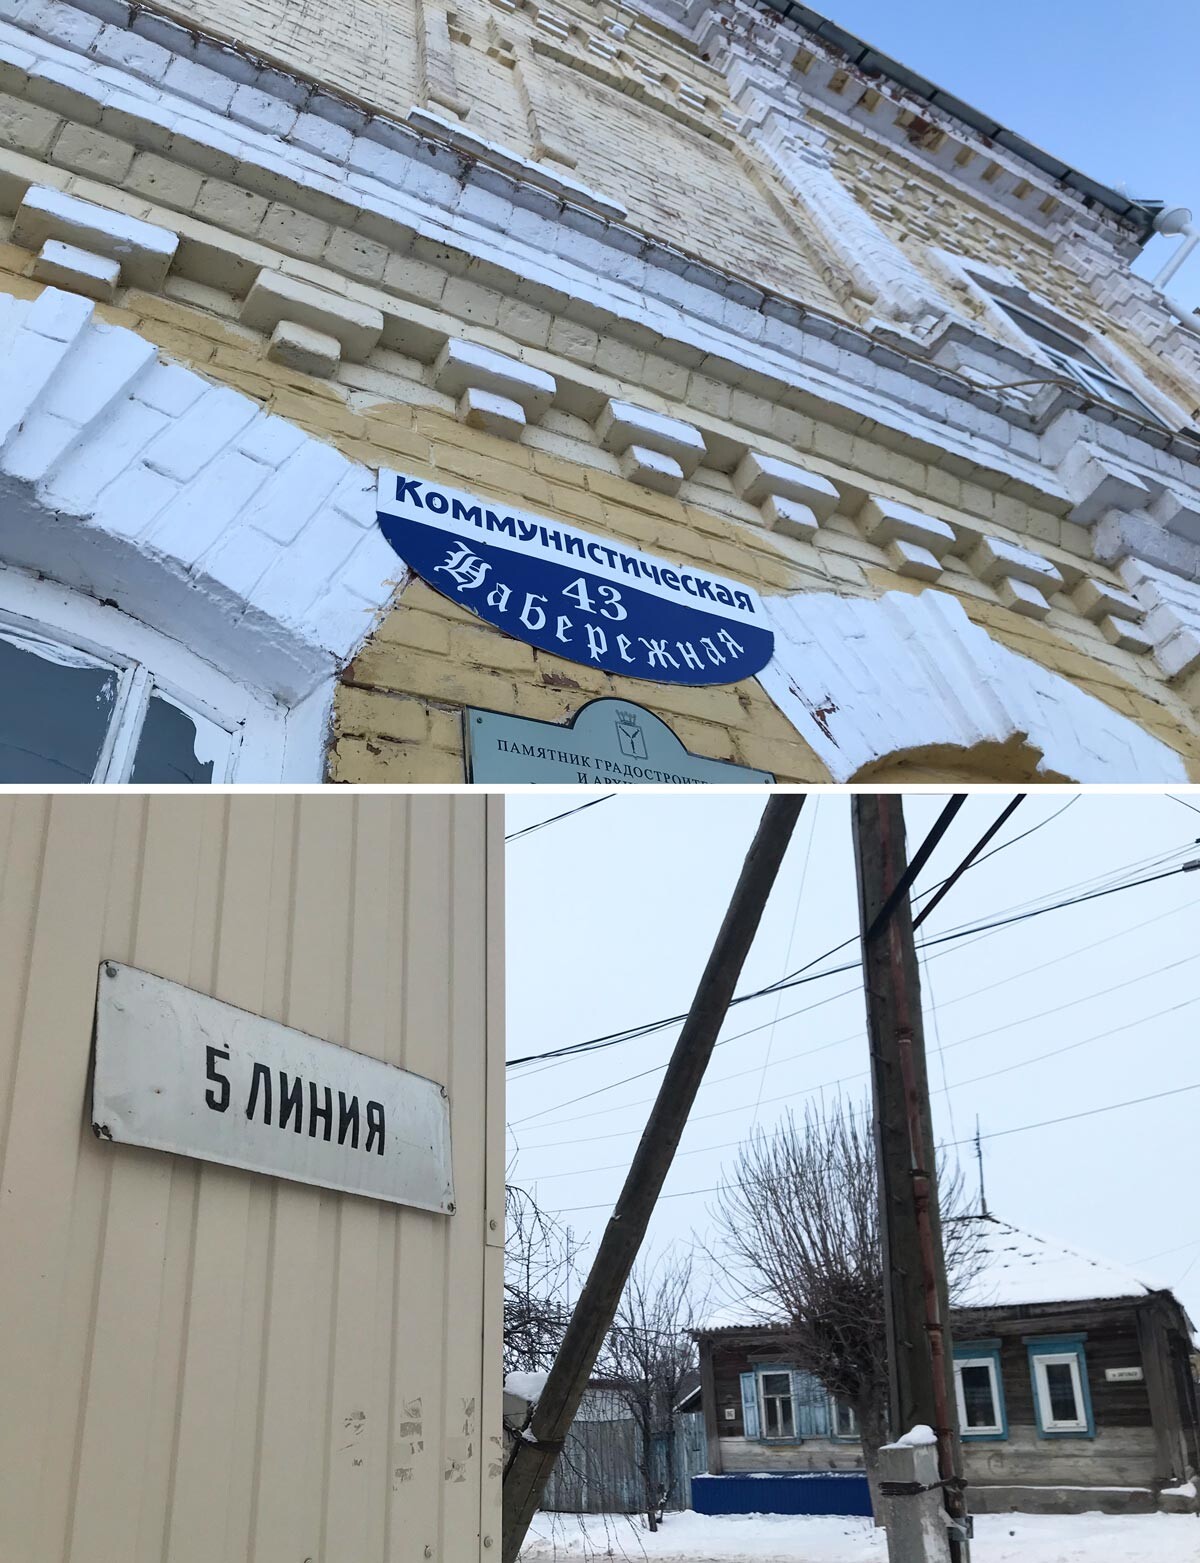 В центральной части города старые названия улиц написаны готическим шрифтом, который на самом деле использовали поволжские немцы. А некоторые улицы называются линиями как на Васильевском острове в Петербурге, где также проживали русские немцы.